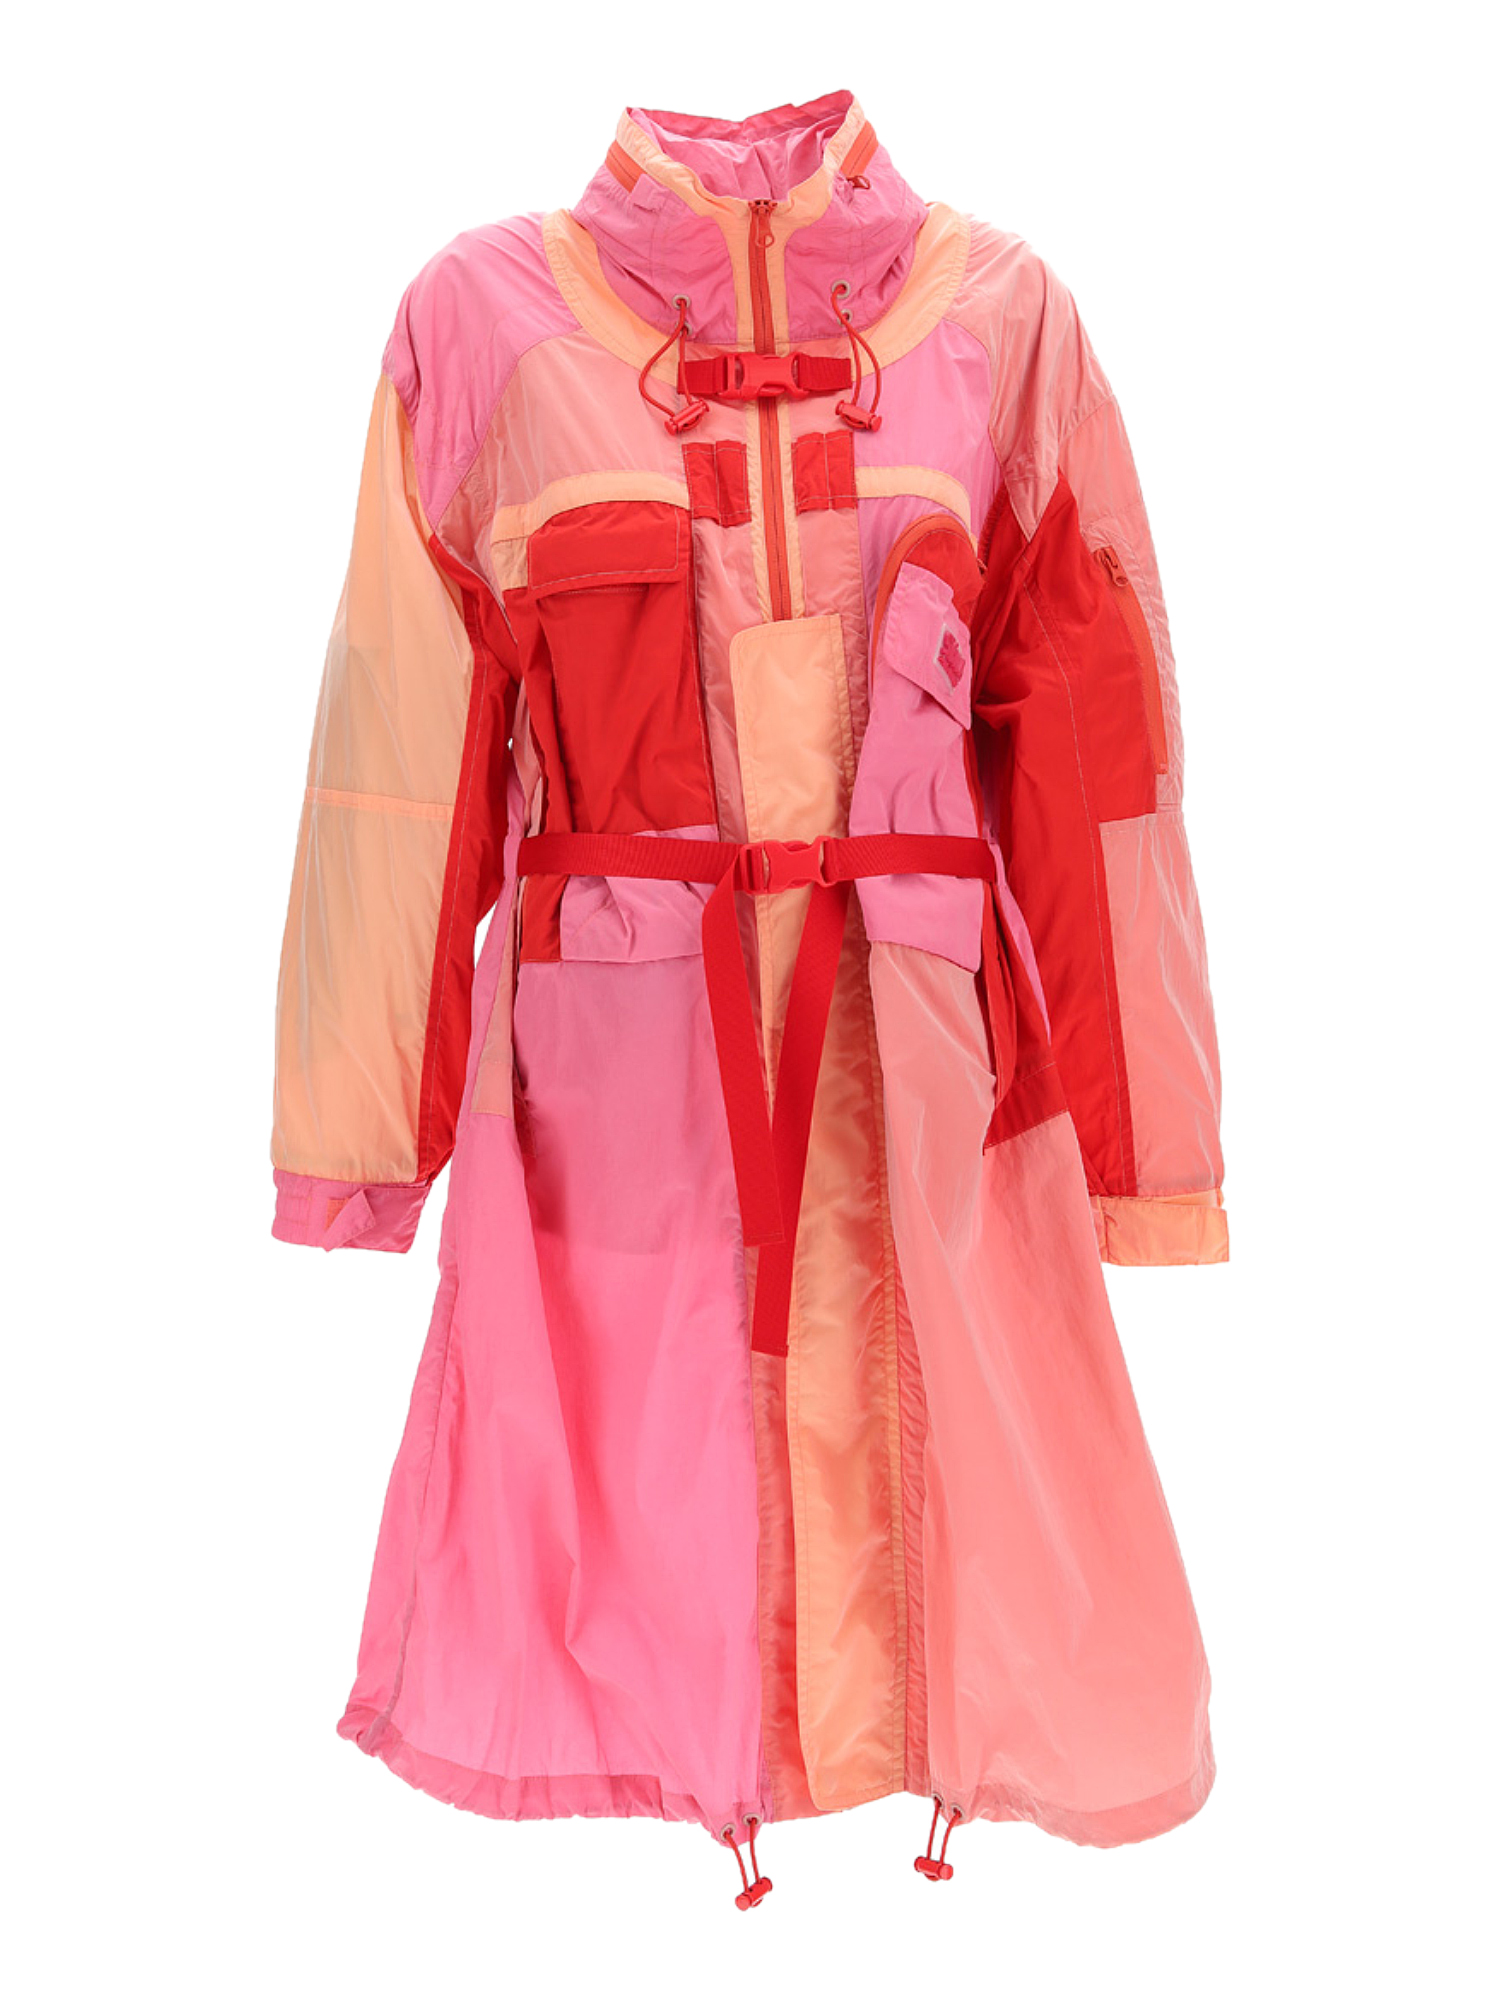 Vestes Pour Femme - Stella Mccartney - En Synthetic Fibers Pink - Taille:  -